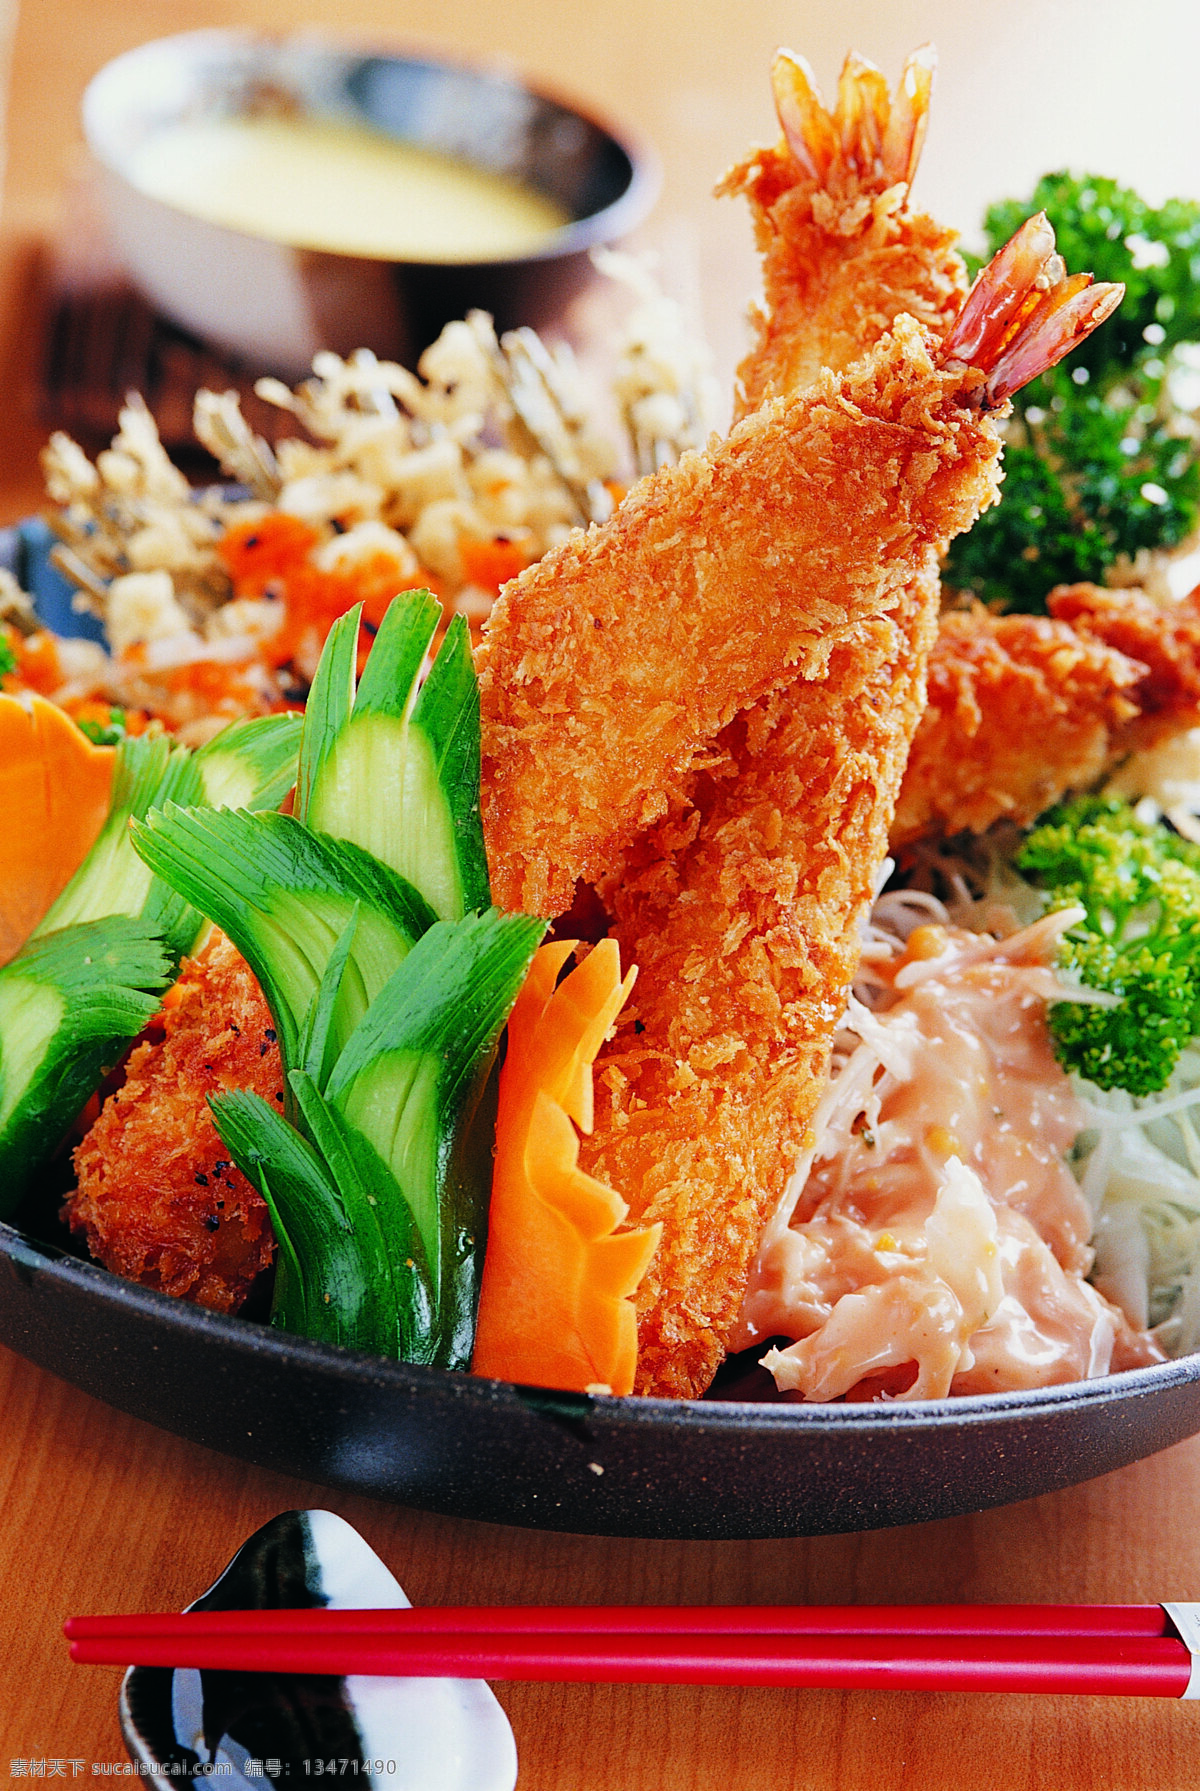 炸虾蔬菜沙拉 炸虾 生菜 沙拉 萝卜丝 红萝卜 西兰花 筷子 西餐美食 餐饮美食